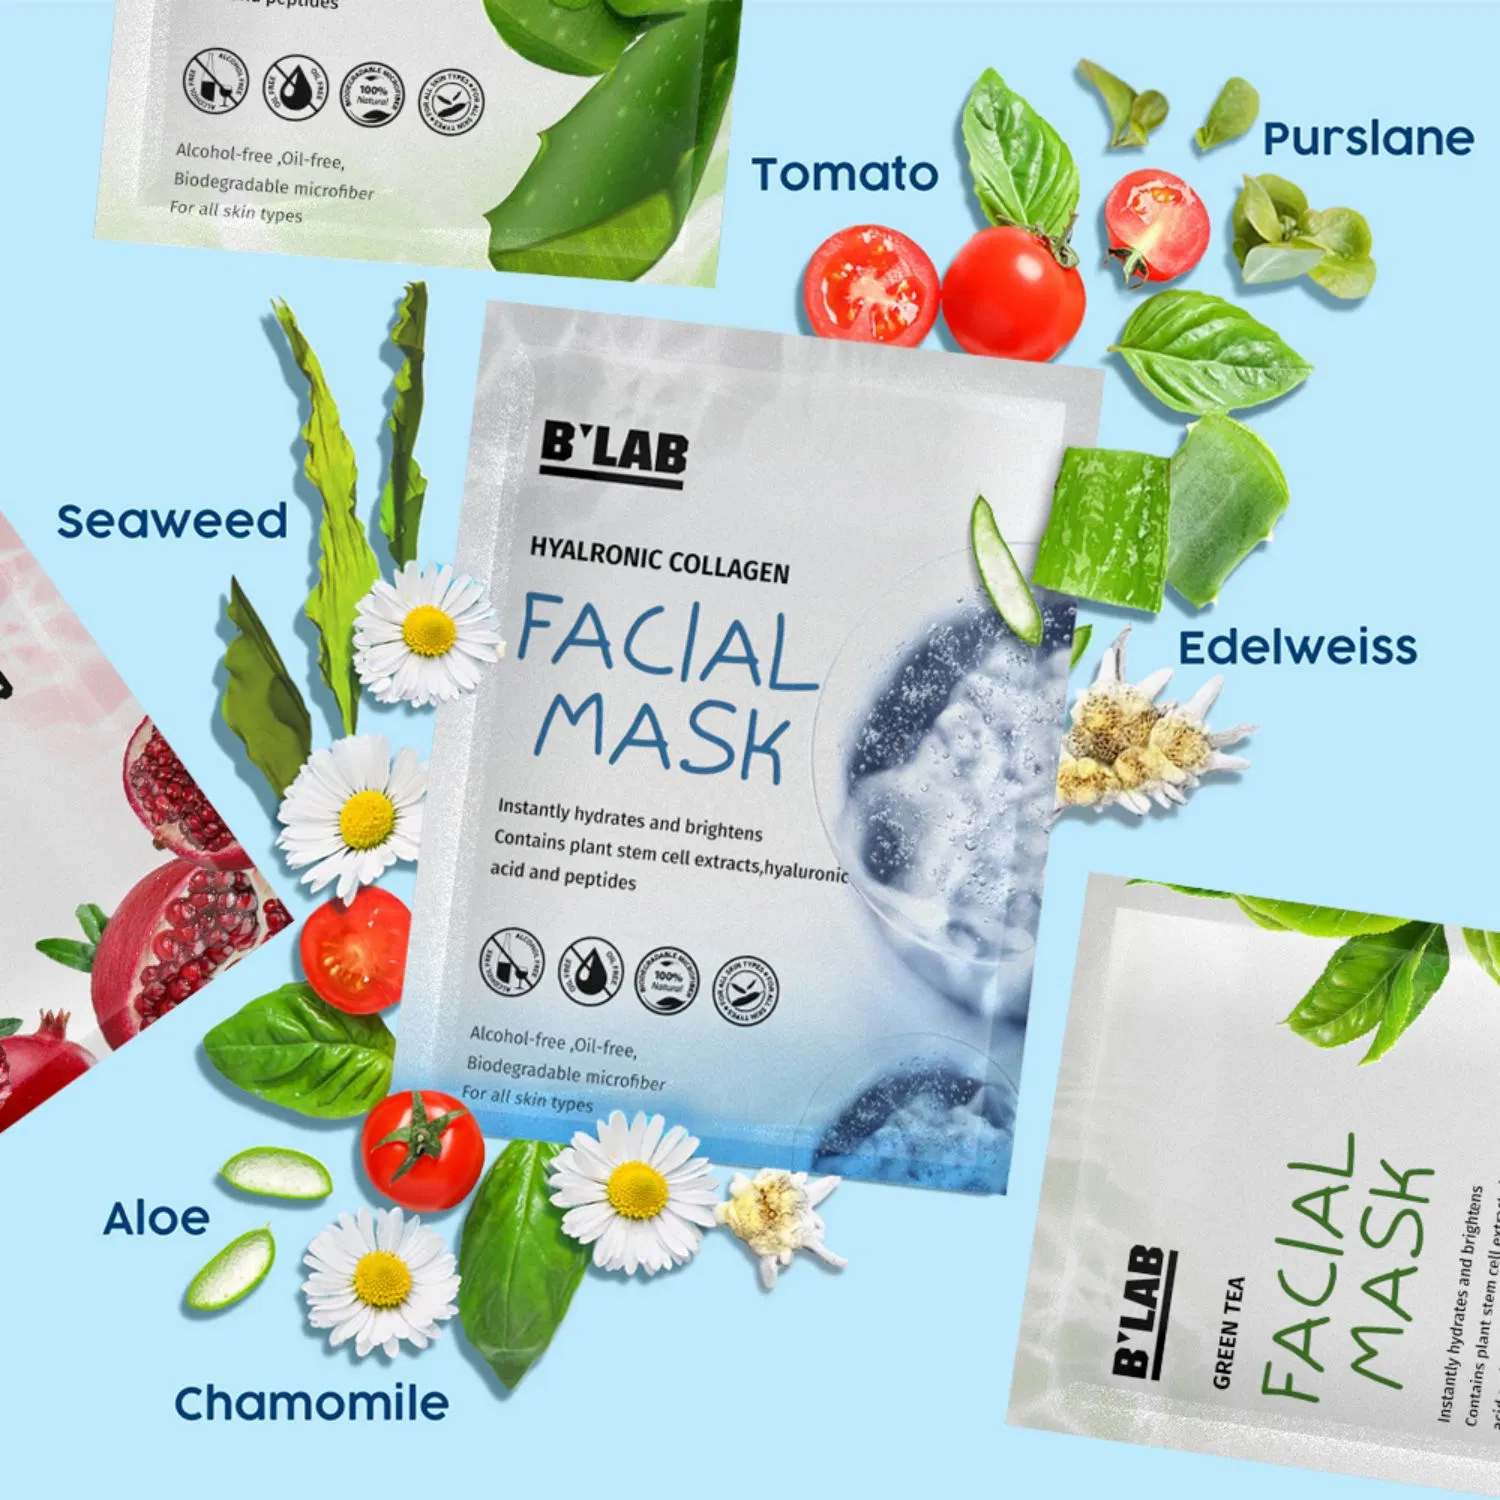 OEM Masque facial sous étiquette privée de soins de peau blanchissant Masque Hydratant Visage jetables feuille